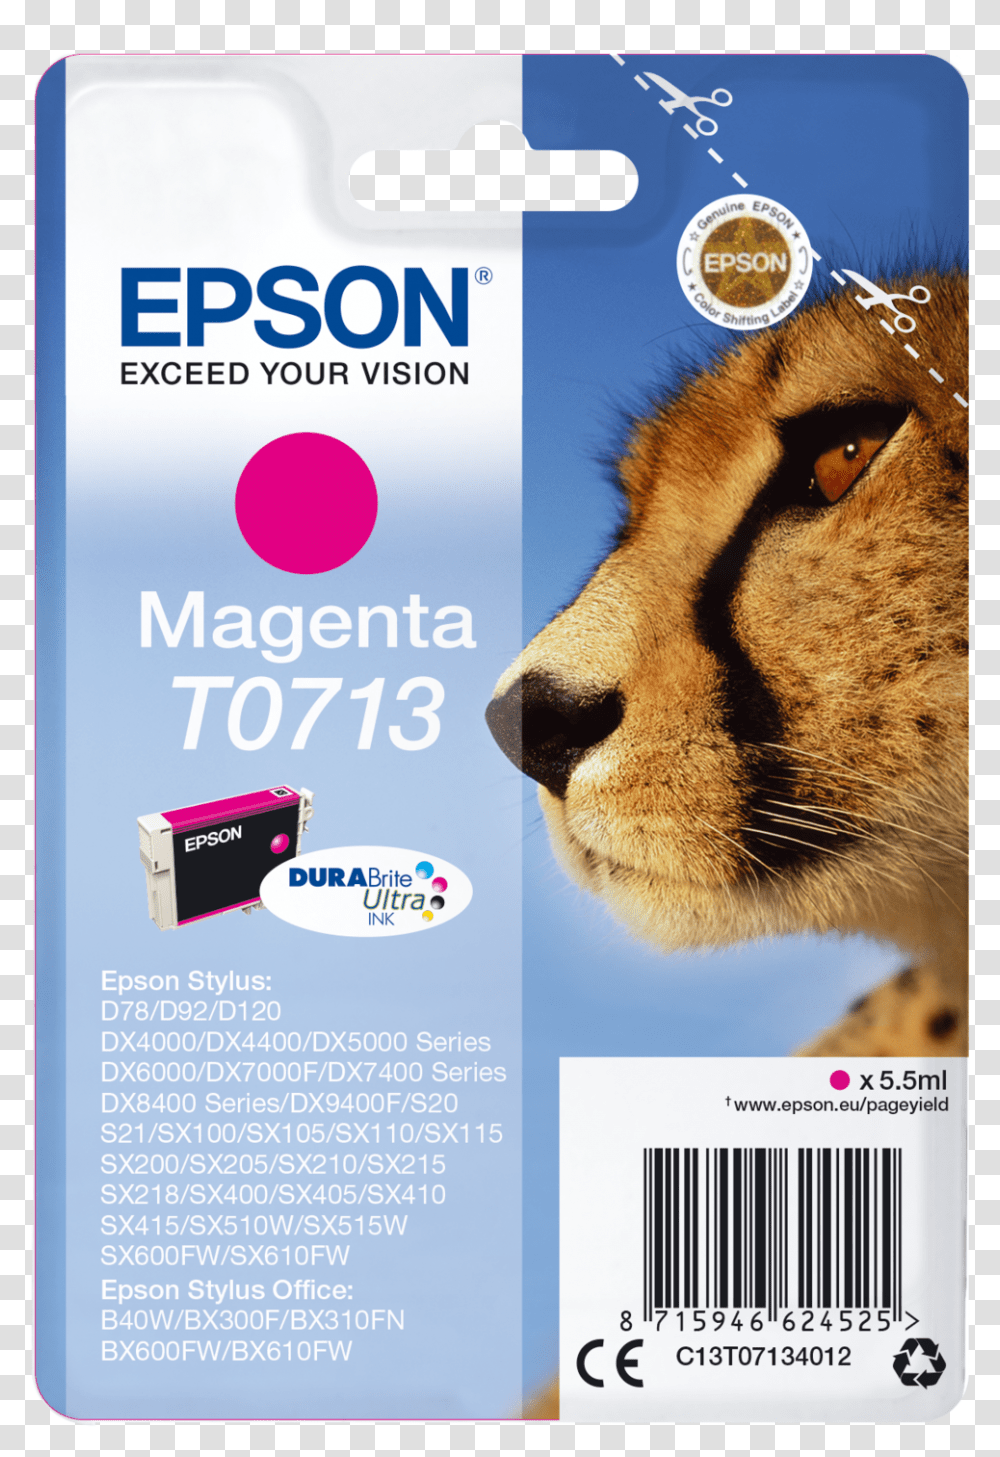 Epson, Cheetah, Wildlife, Mammal, Animal Transparent Png